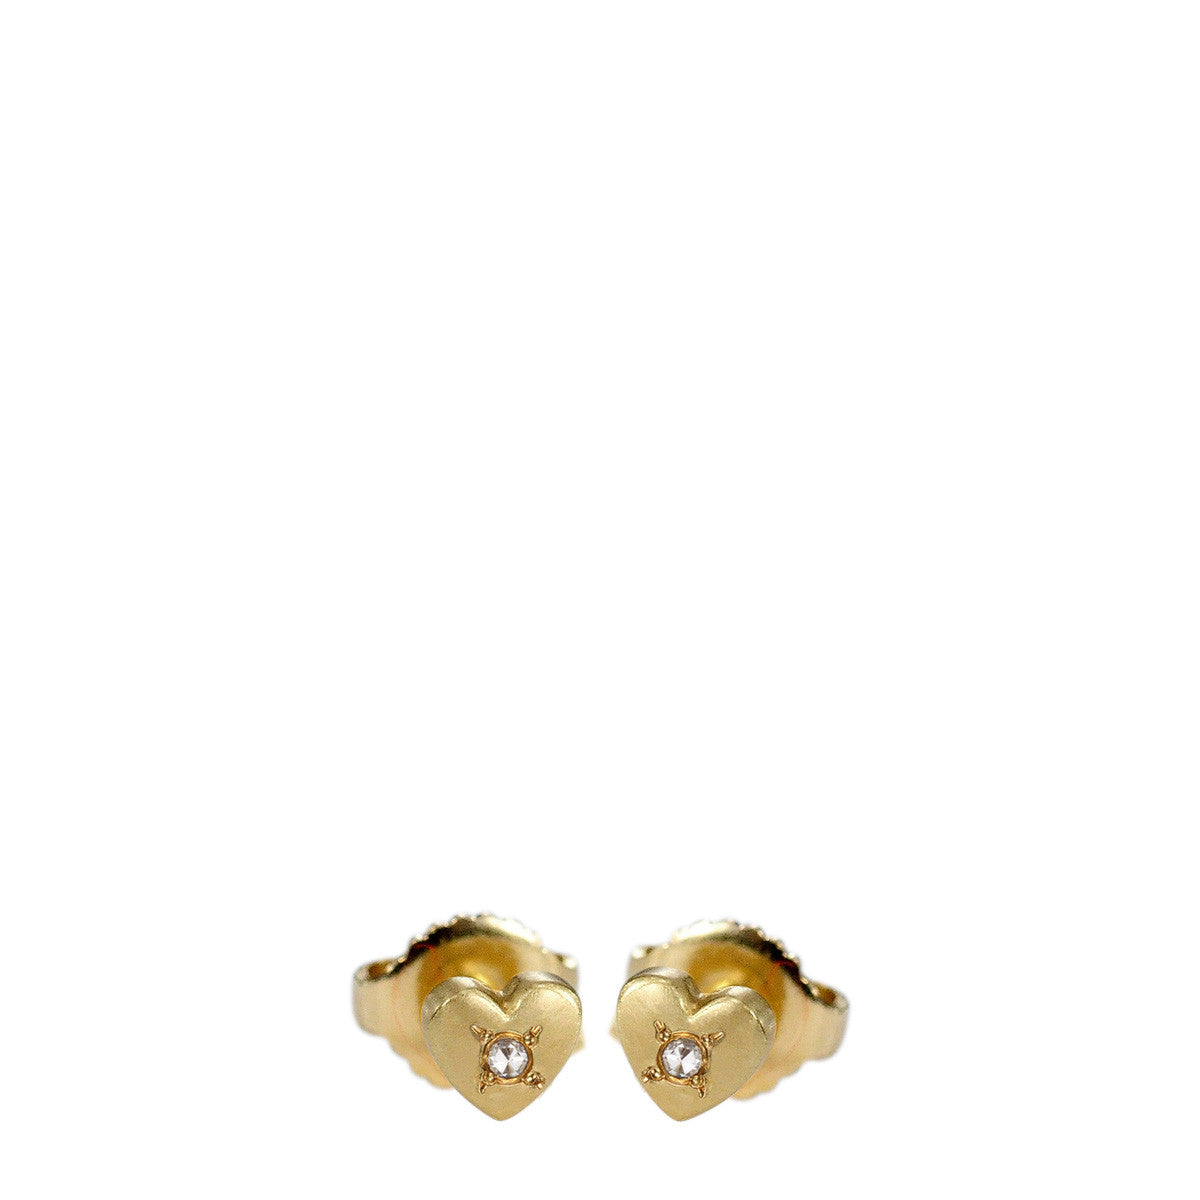 18K Gold Heart Stud Earrings with Diamonds